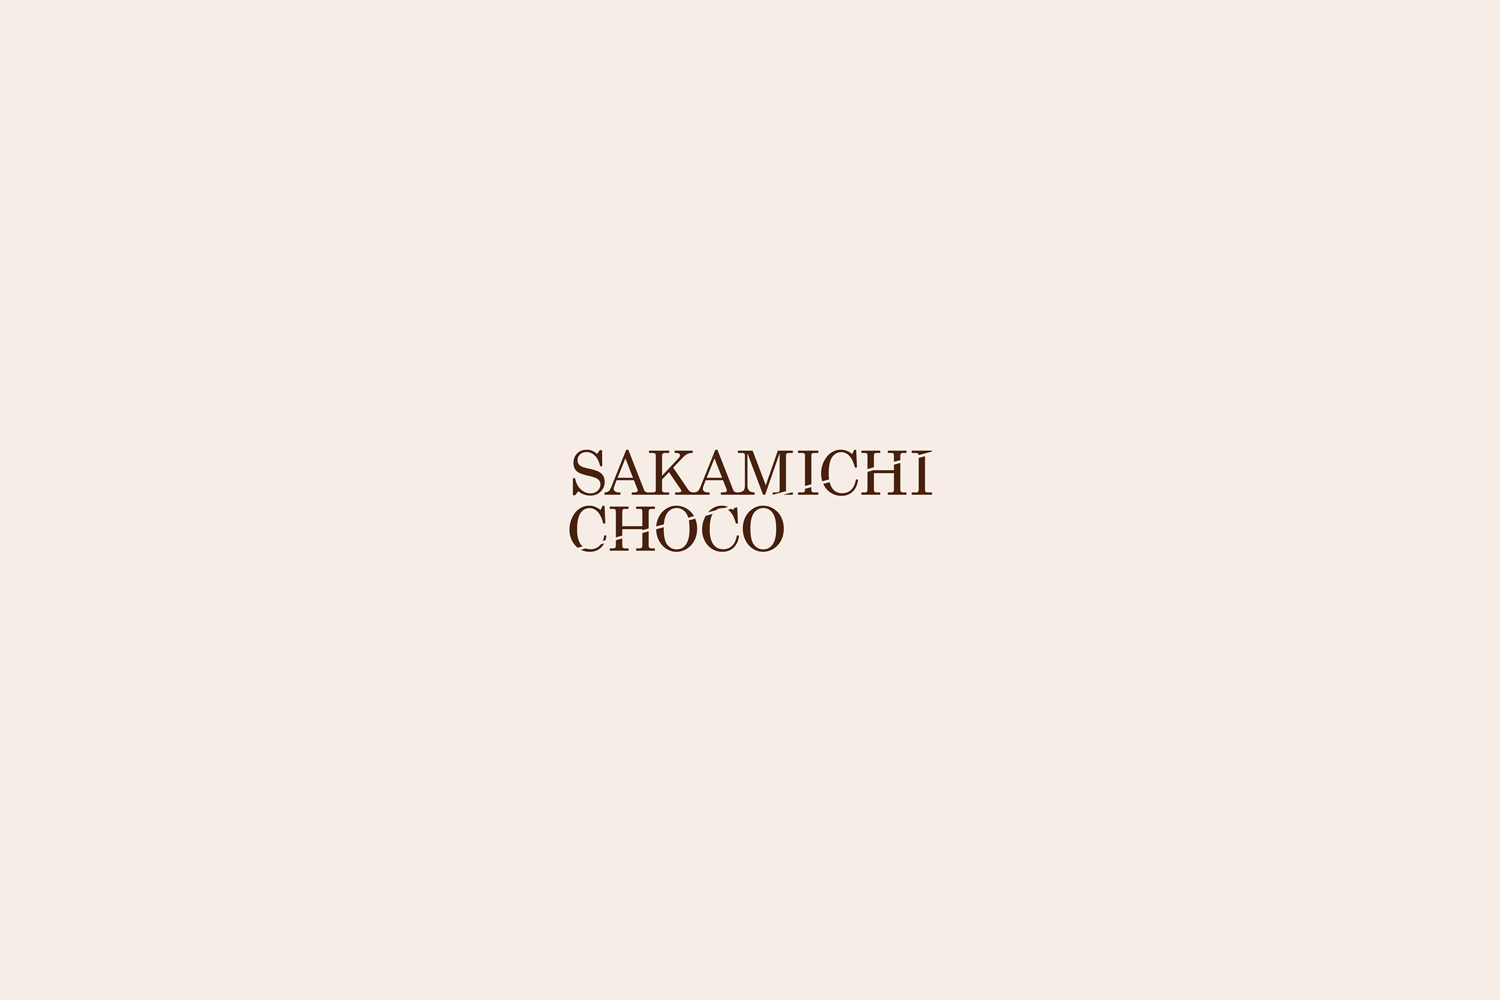 Sakamichi Choco